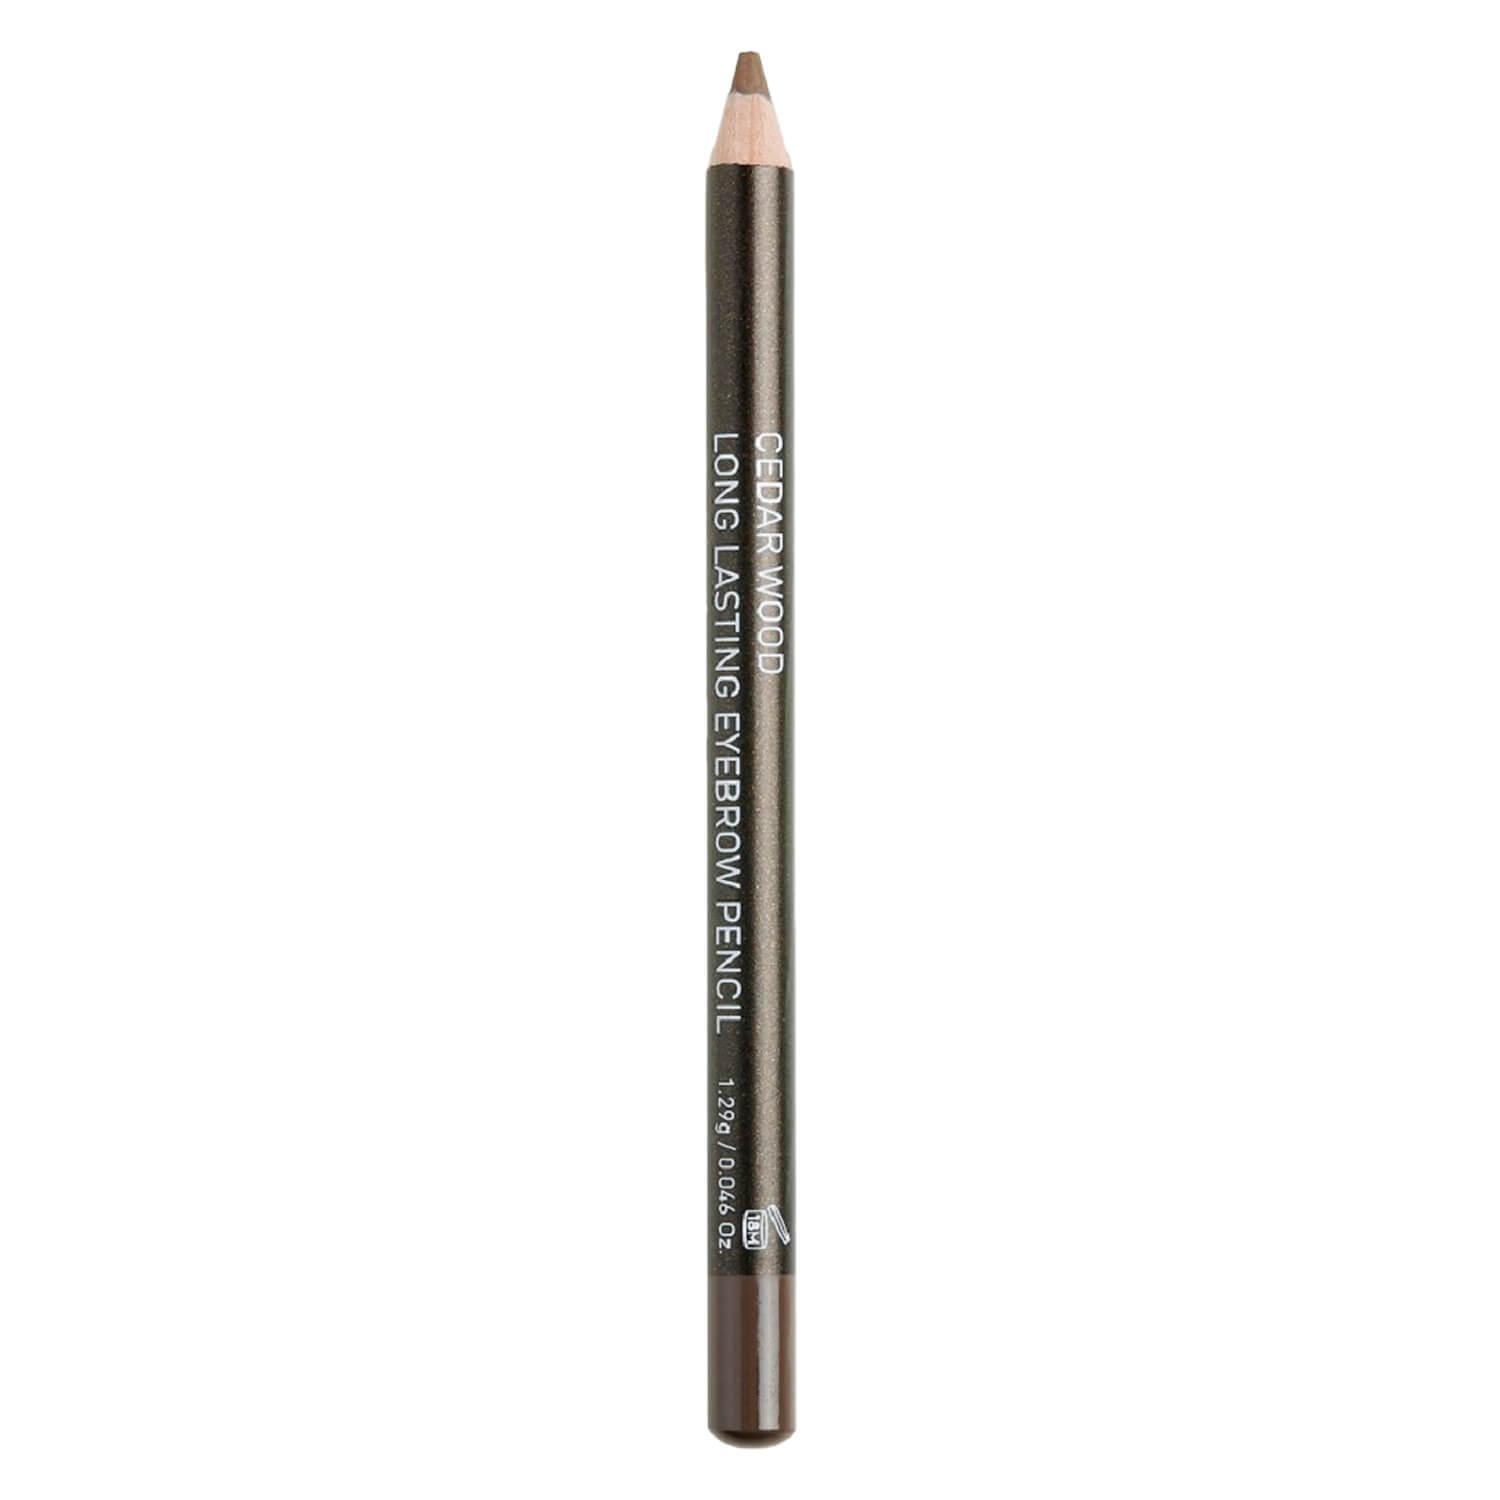 Korres Brows - Cedar Eyebrow Pencil No 1 Dark Shade